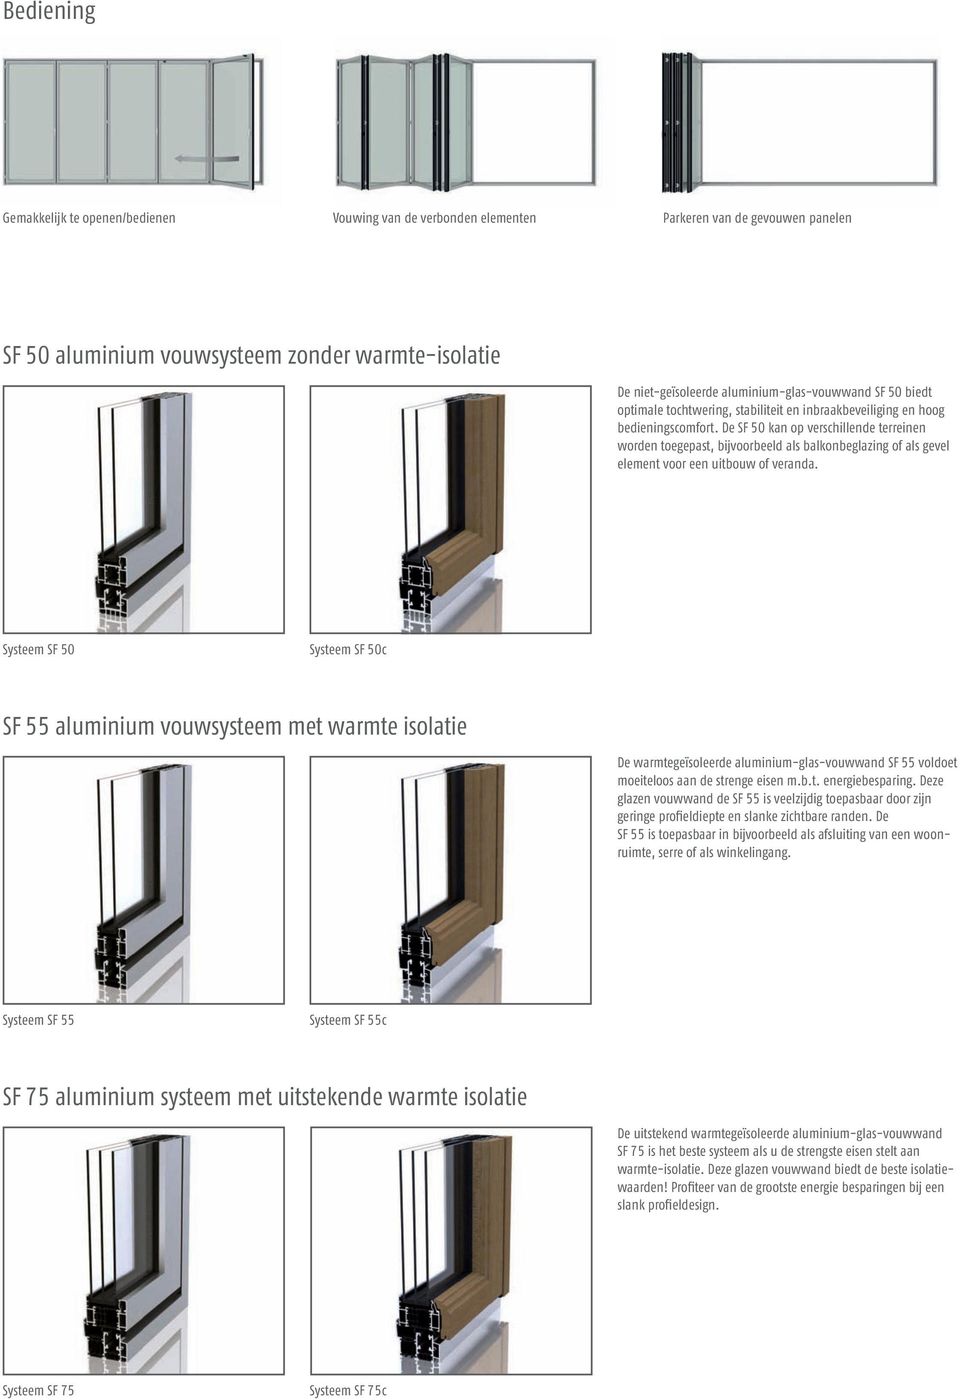 De SF 50 kan op verschillende terreinen worden toegepast, bijvoorbeeld als balkonbeglazing of als gevel element voor een uitbouw of veranda.